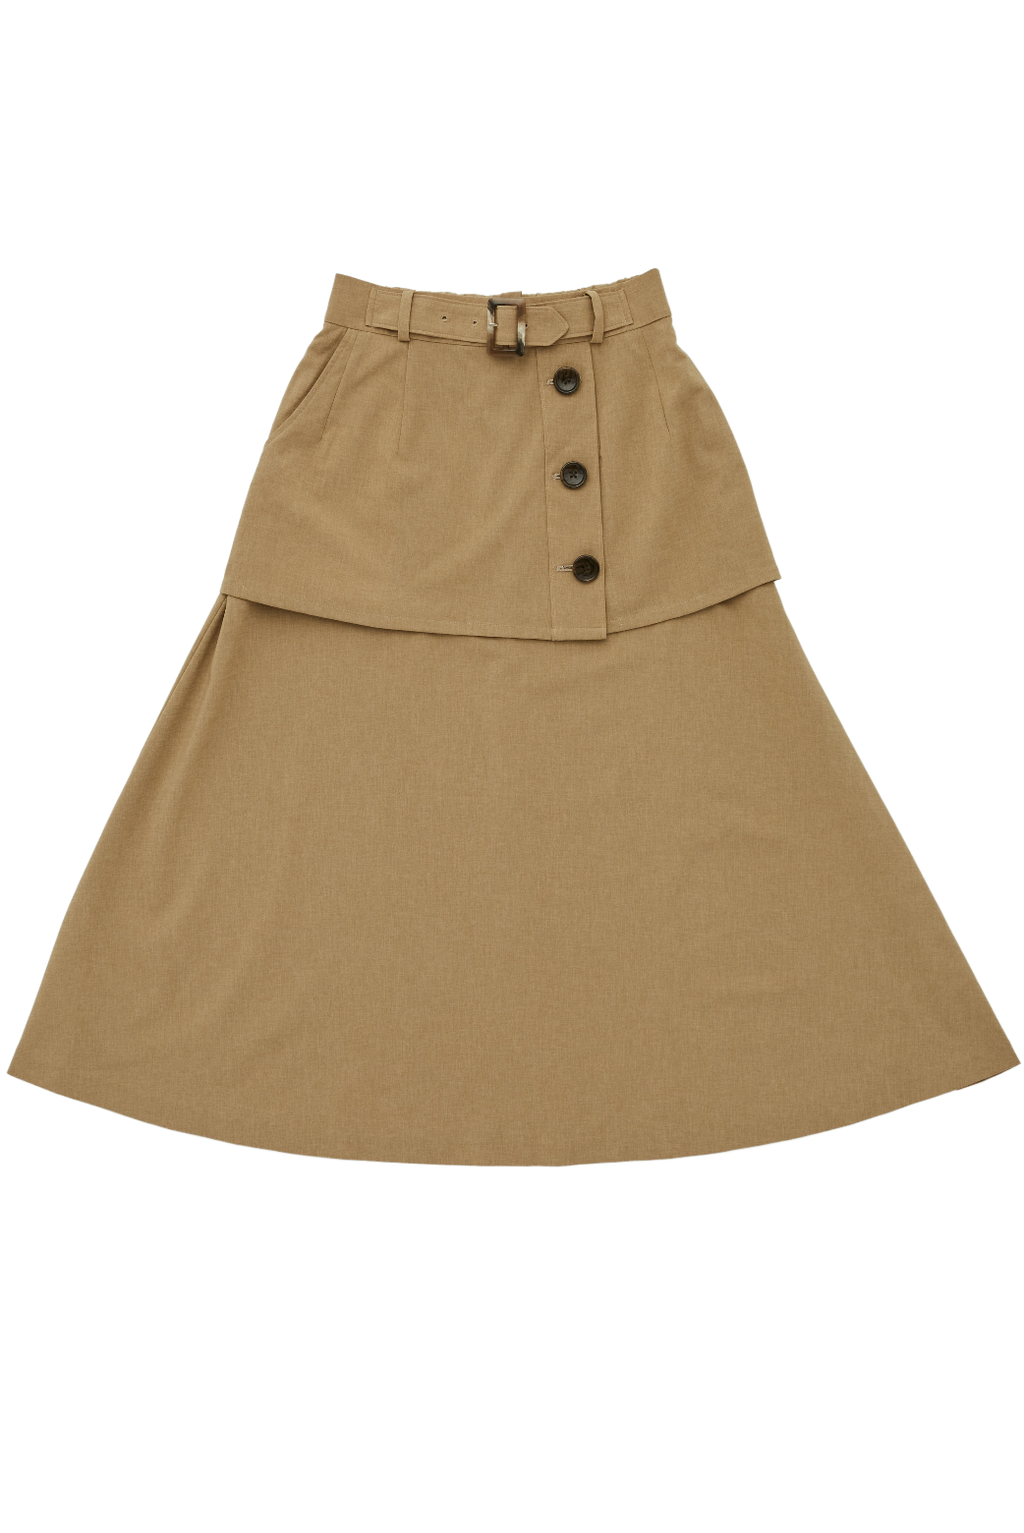 Trench Layered Skirt